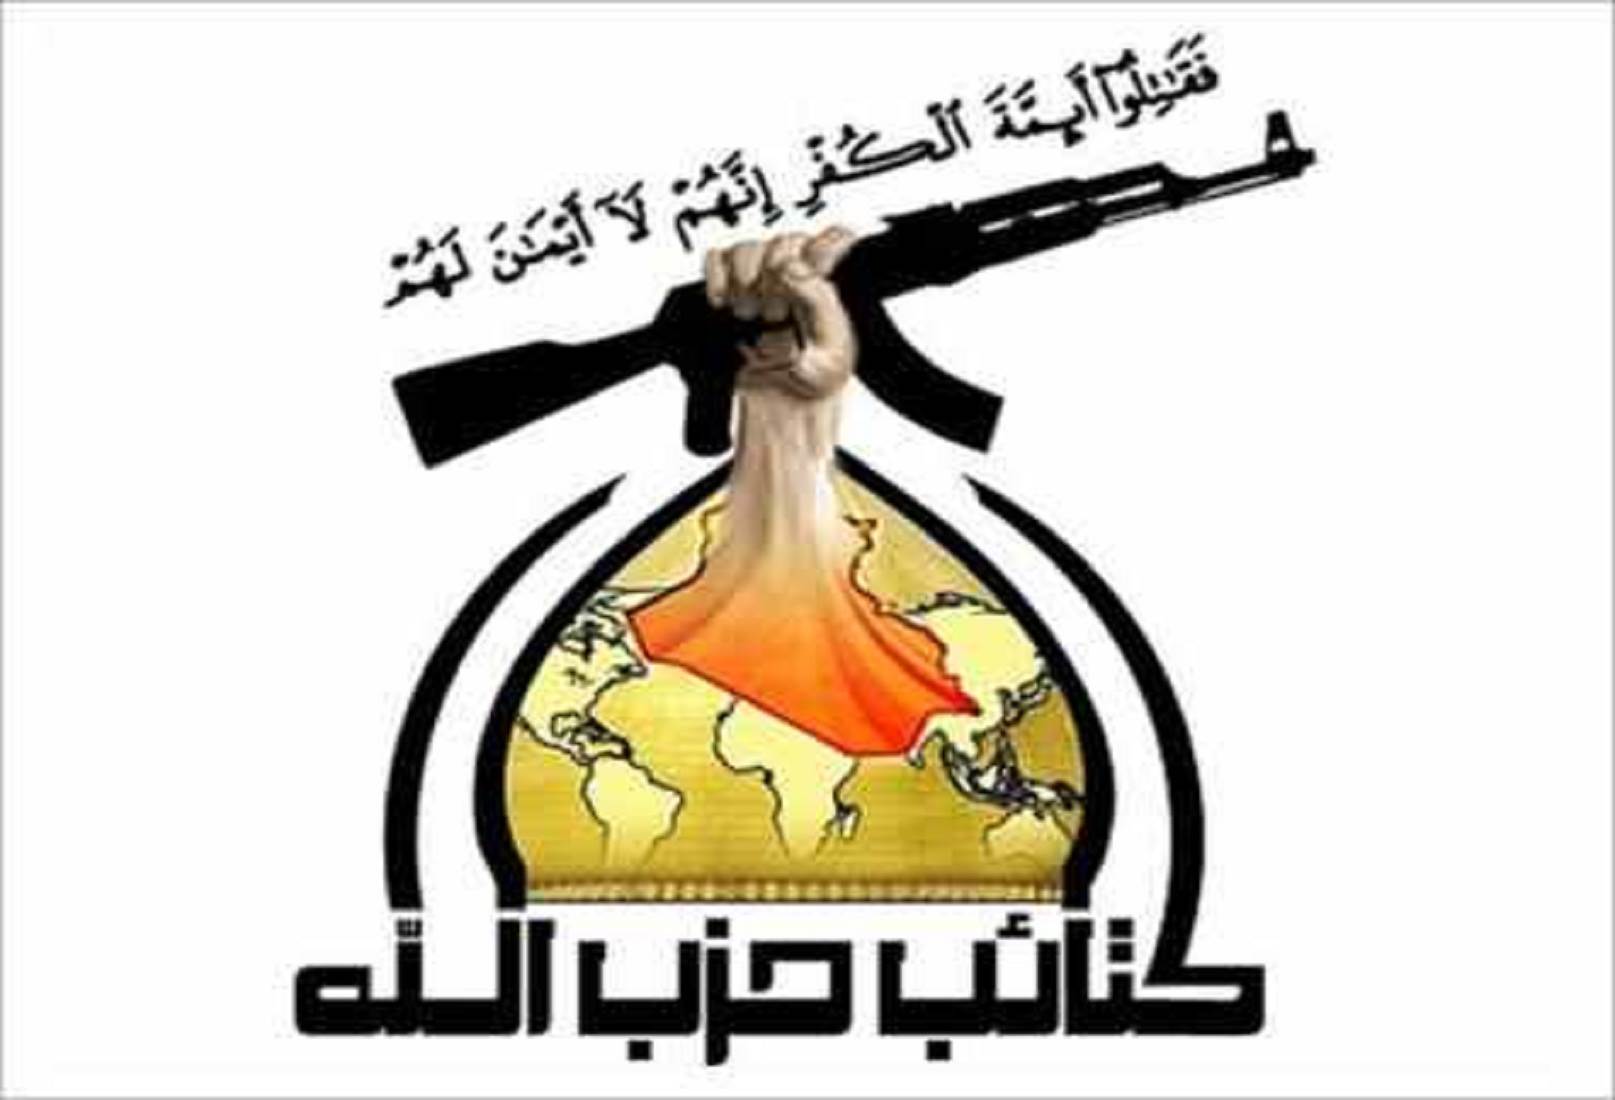 كتائب حزب الله العراق:سنشن غارات صاروخية على السعودية !!